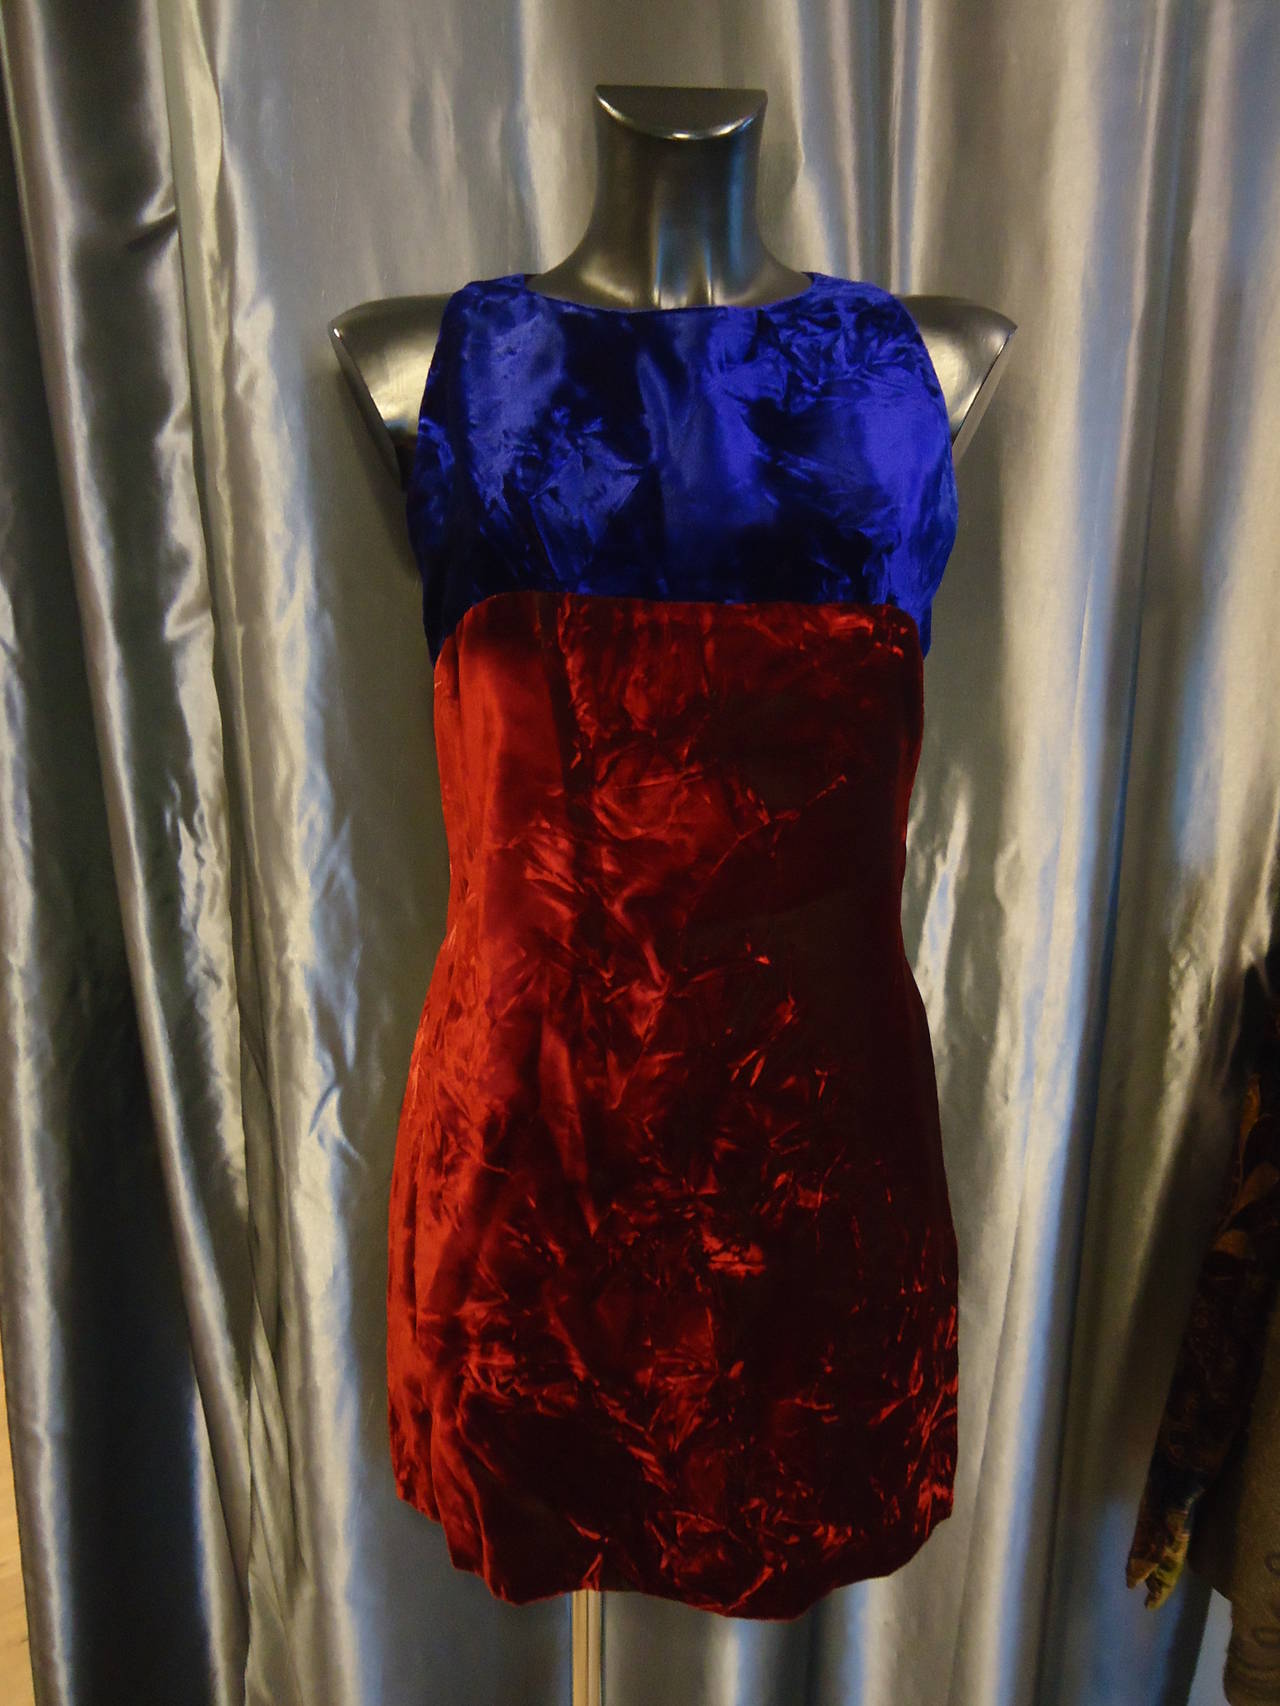 Superbe costume robe et pardessus de Versace, la marque créée par le génie de Gianni Versace en 1985.
Vintage des années 90
Magnifique combinaison de couleurs fantastiques, bleu et rouge avec de merveilleuses nuances.
La robe est sans manches tandis